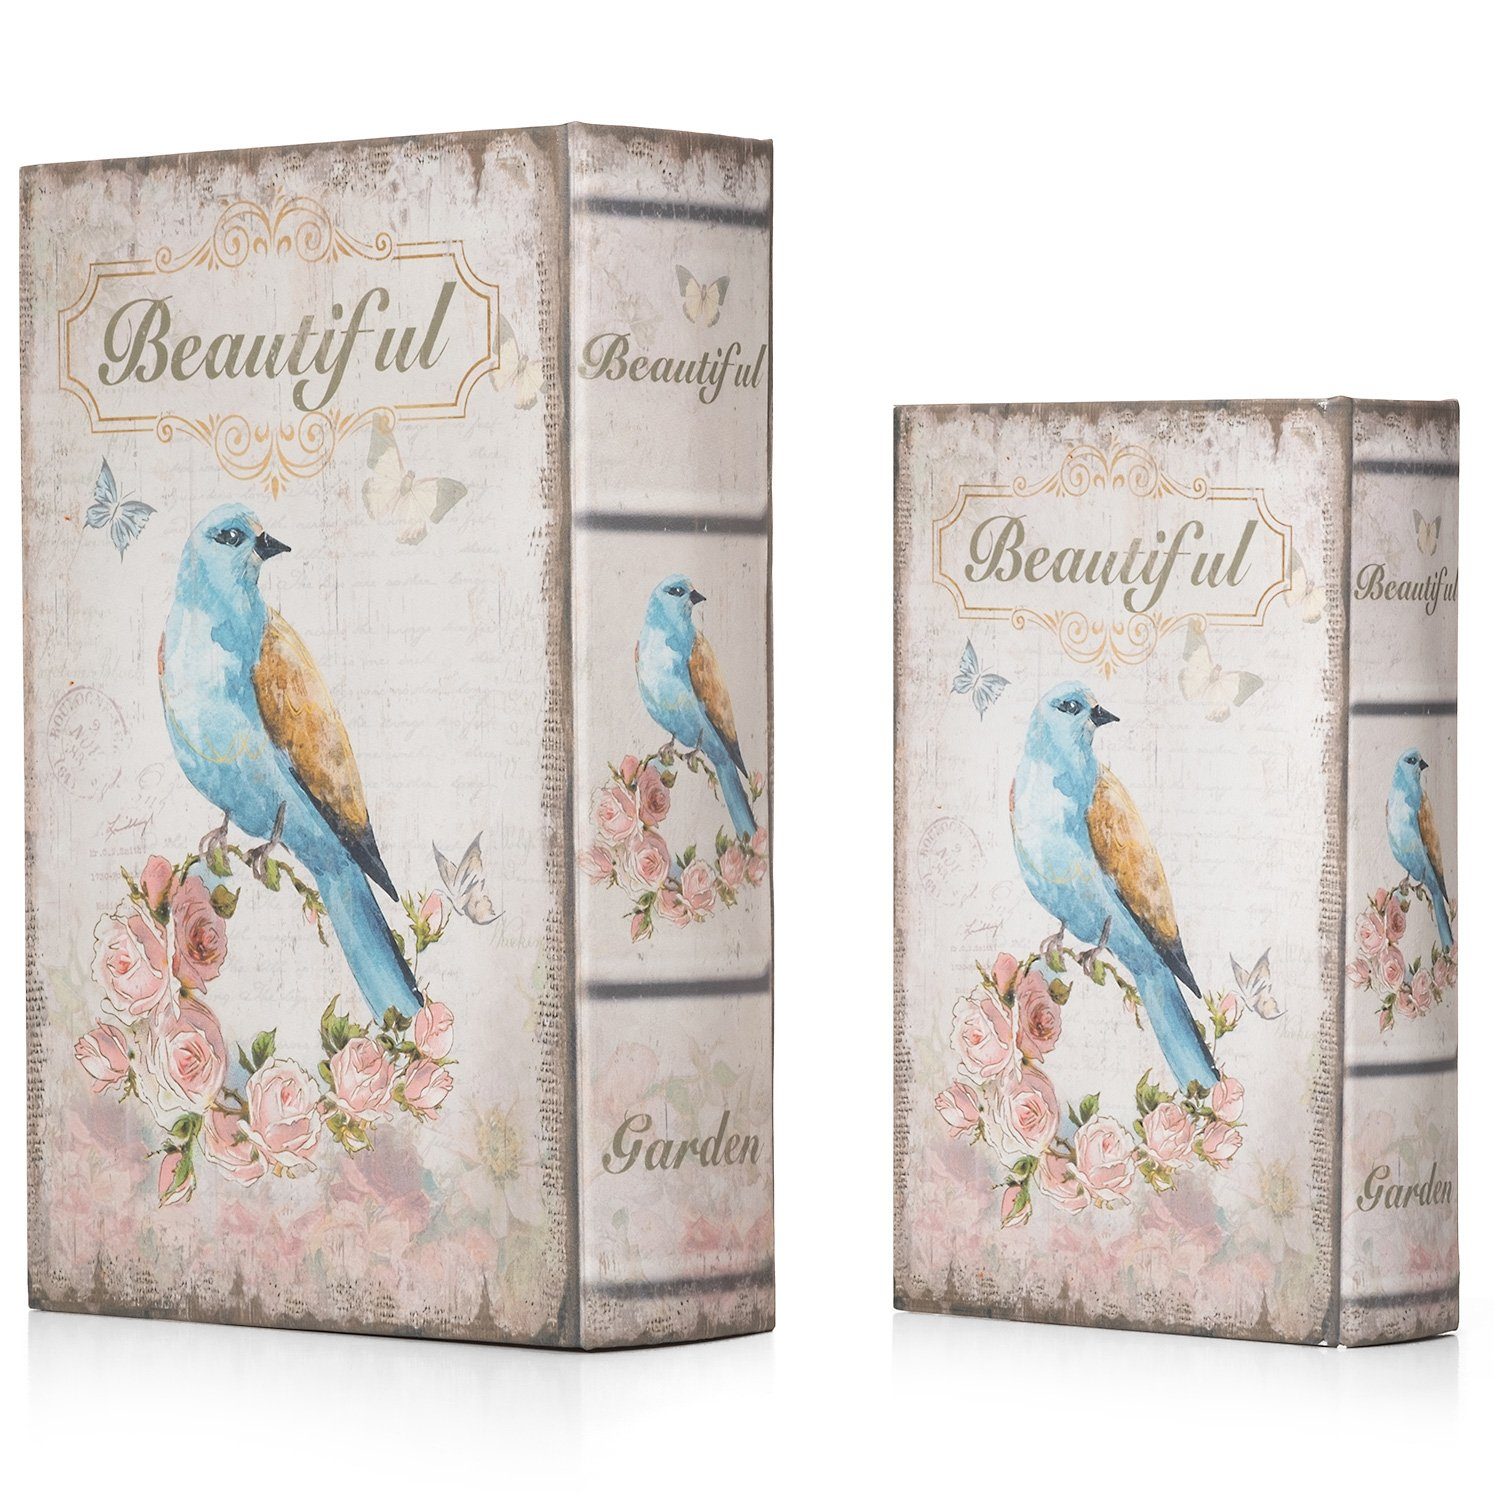 Moritz Etui Buchattrappe Bird Vogel Geldversteck Buch Safe Schatulle Vögelchen Buchtresor irrelevant, Box Beautiful Buchhülle